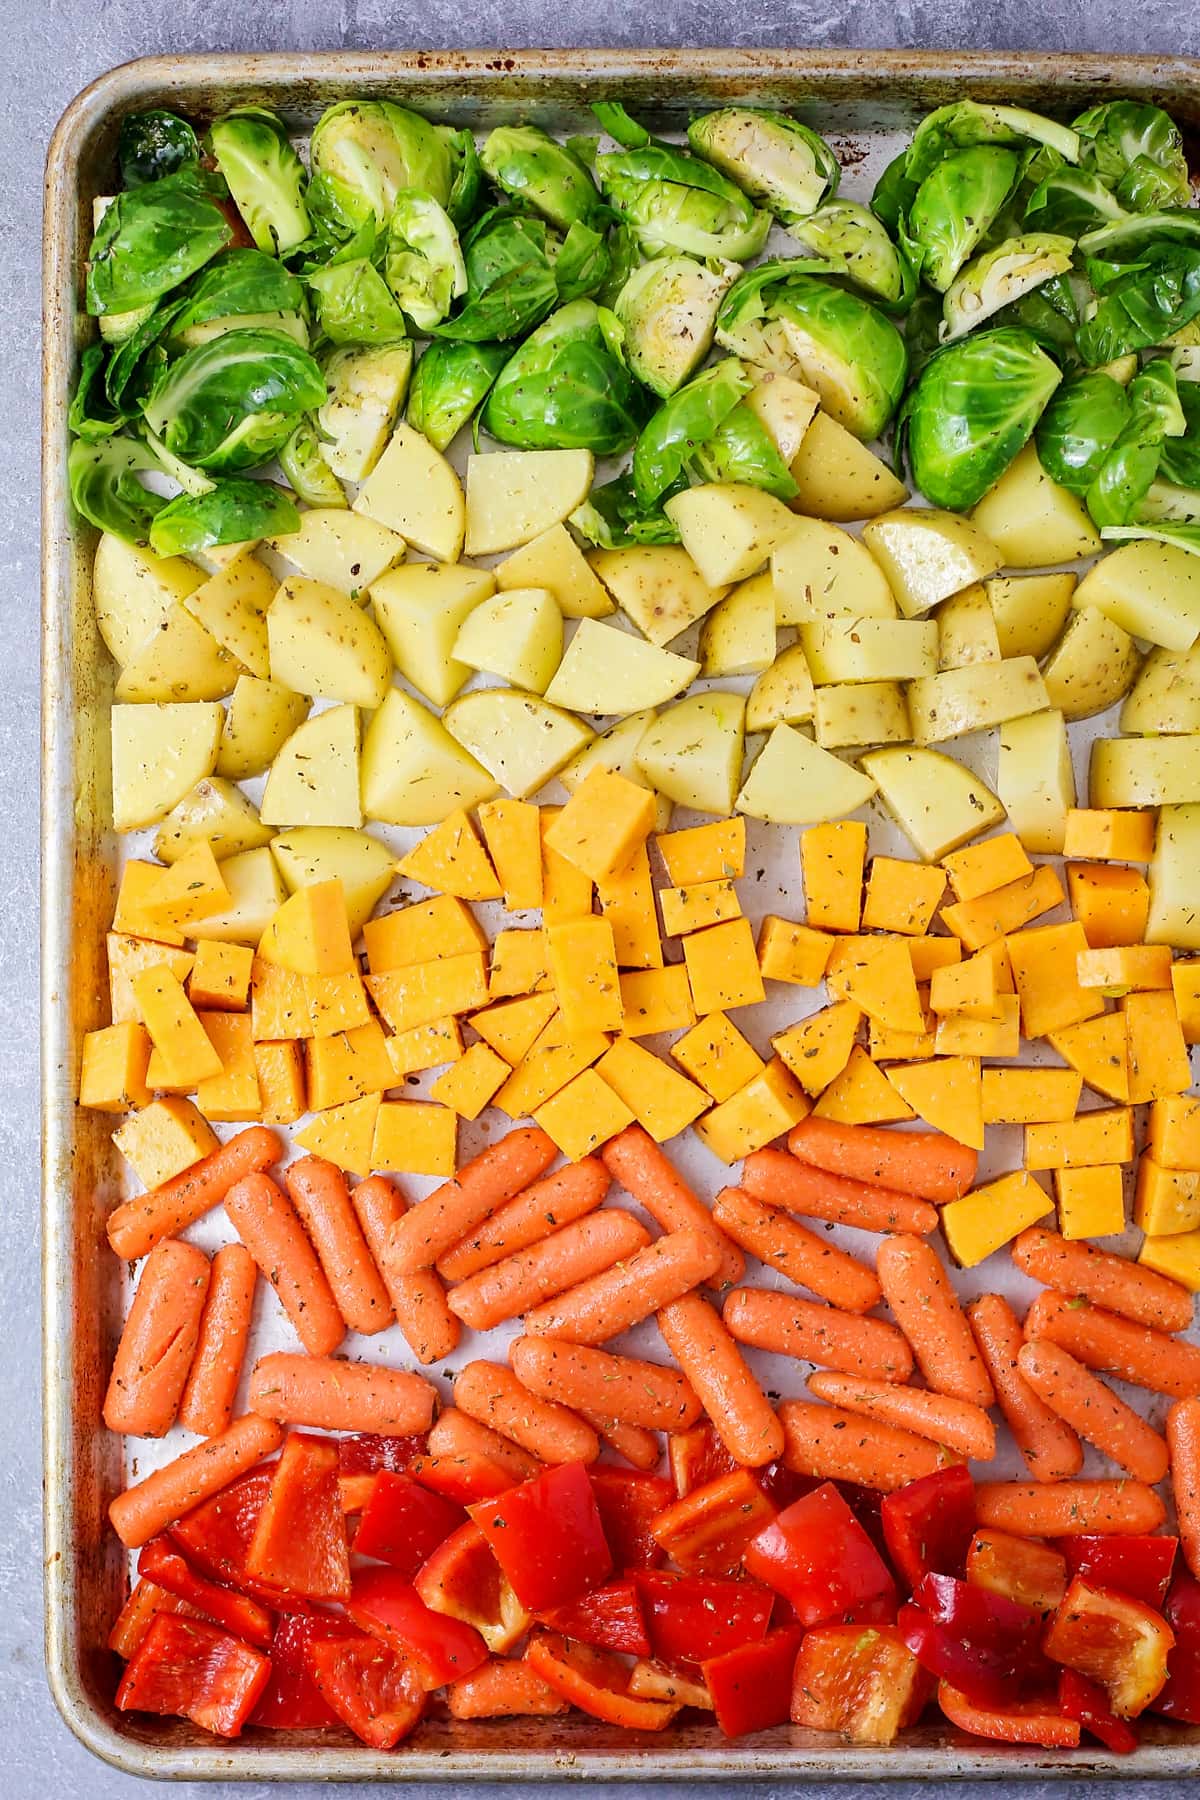 将烤好的蔬菜按彩虹顺序放在烤盘上准备烘烤。